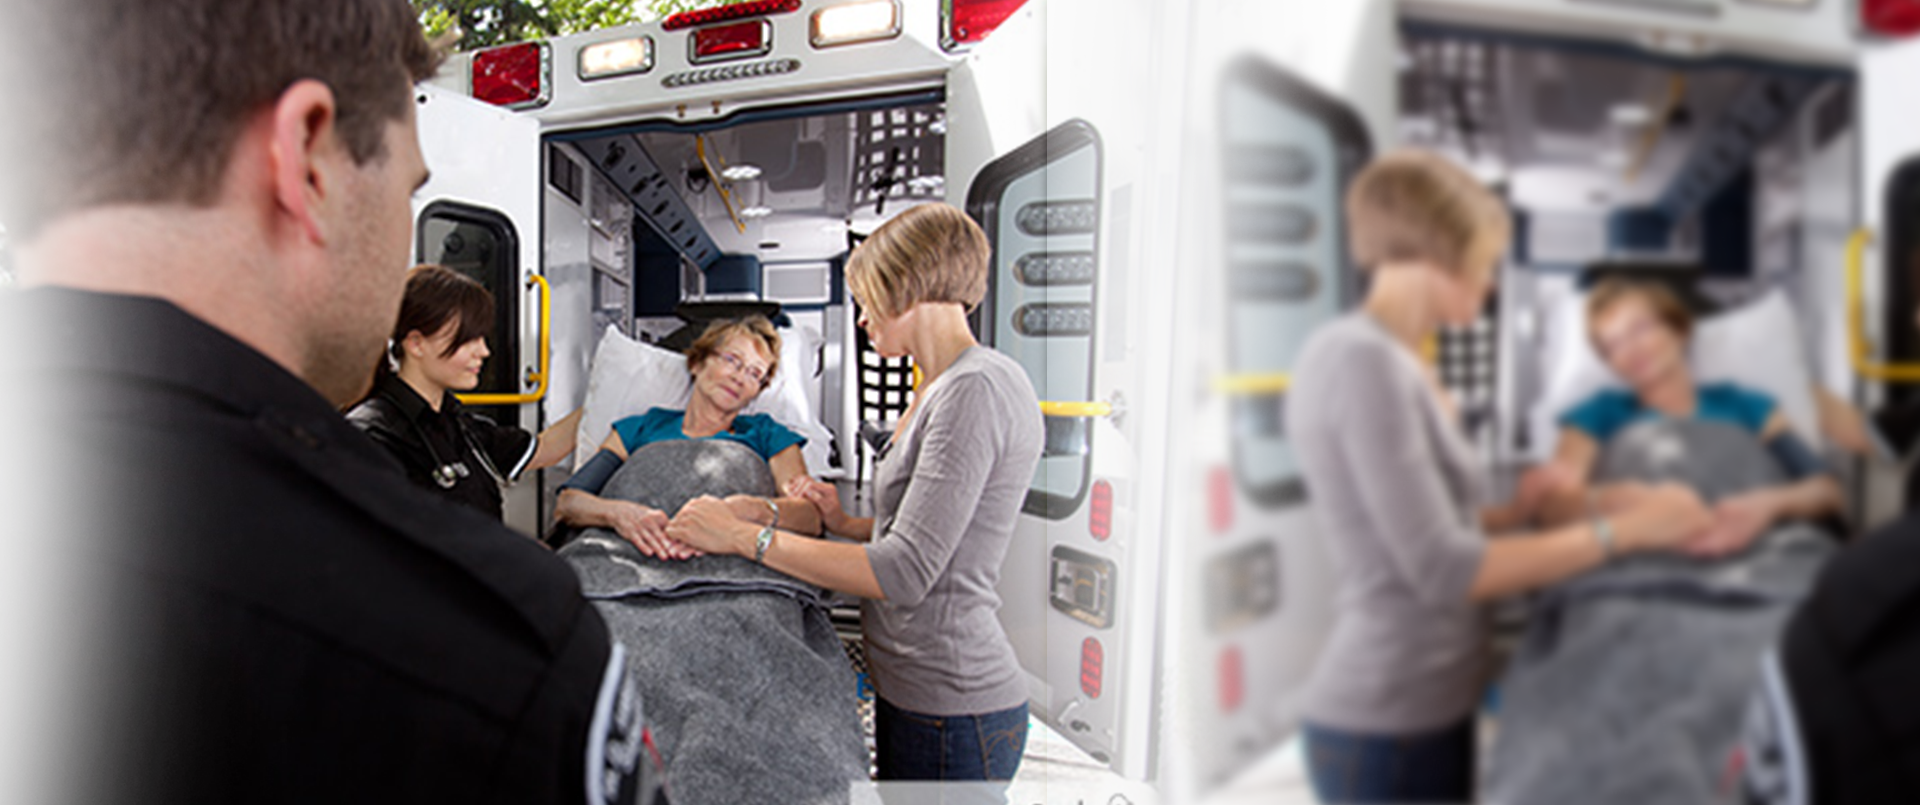 Ambulance Service in Dallas, Houston, Jacksonville, Miami, Tampa